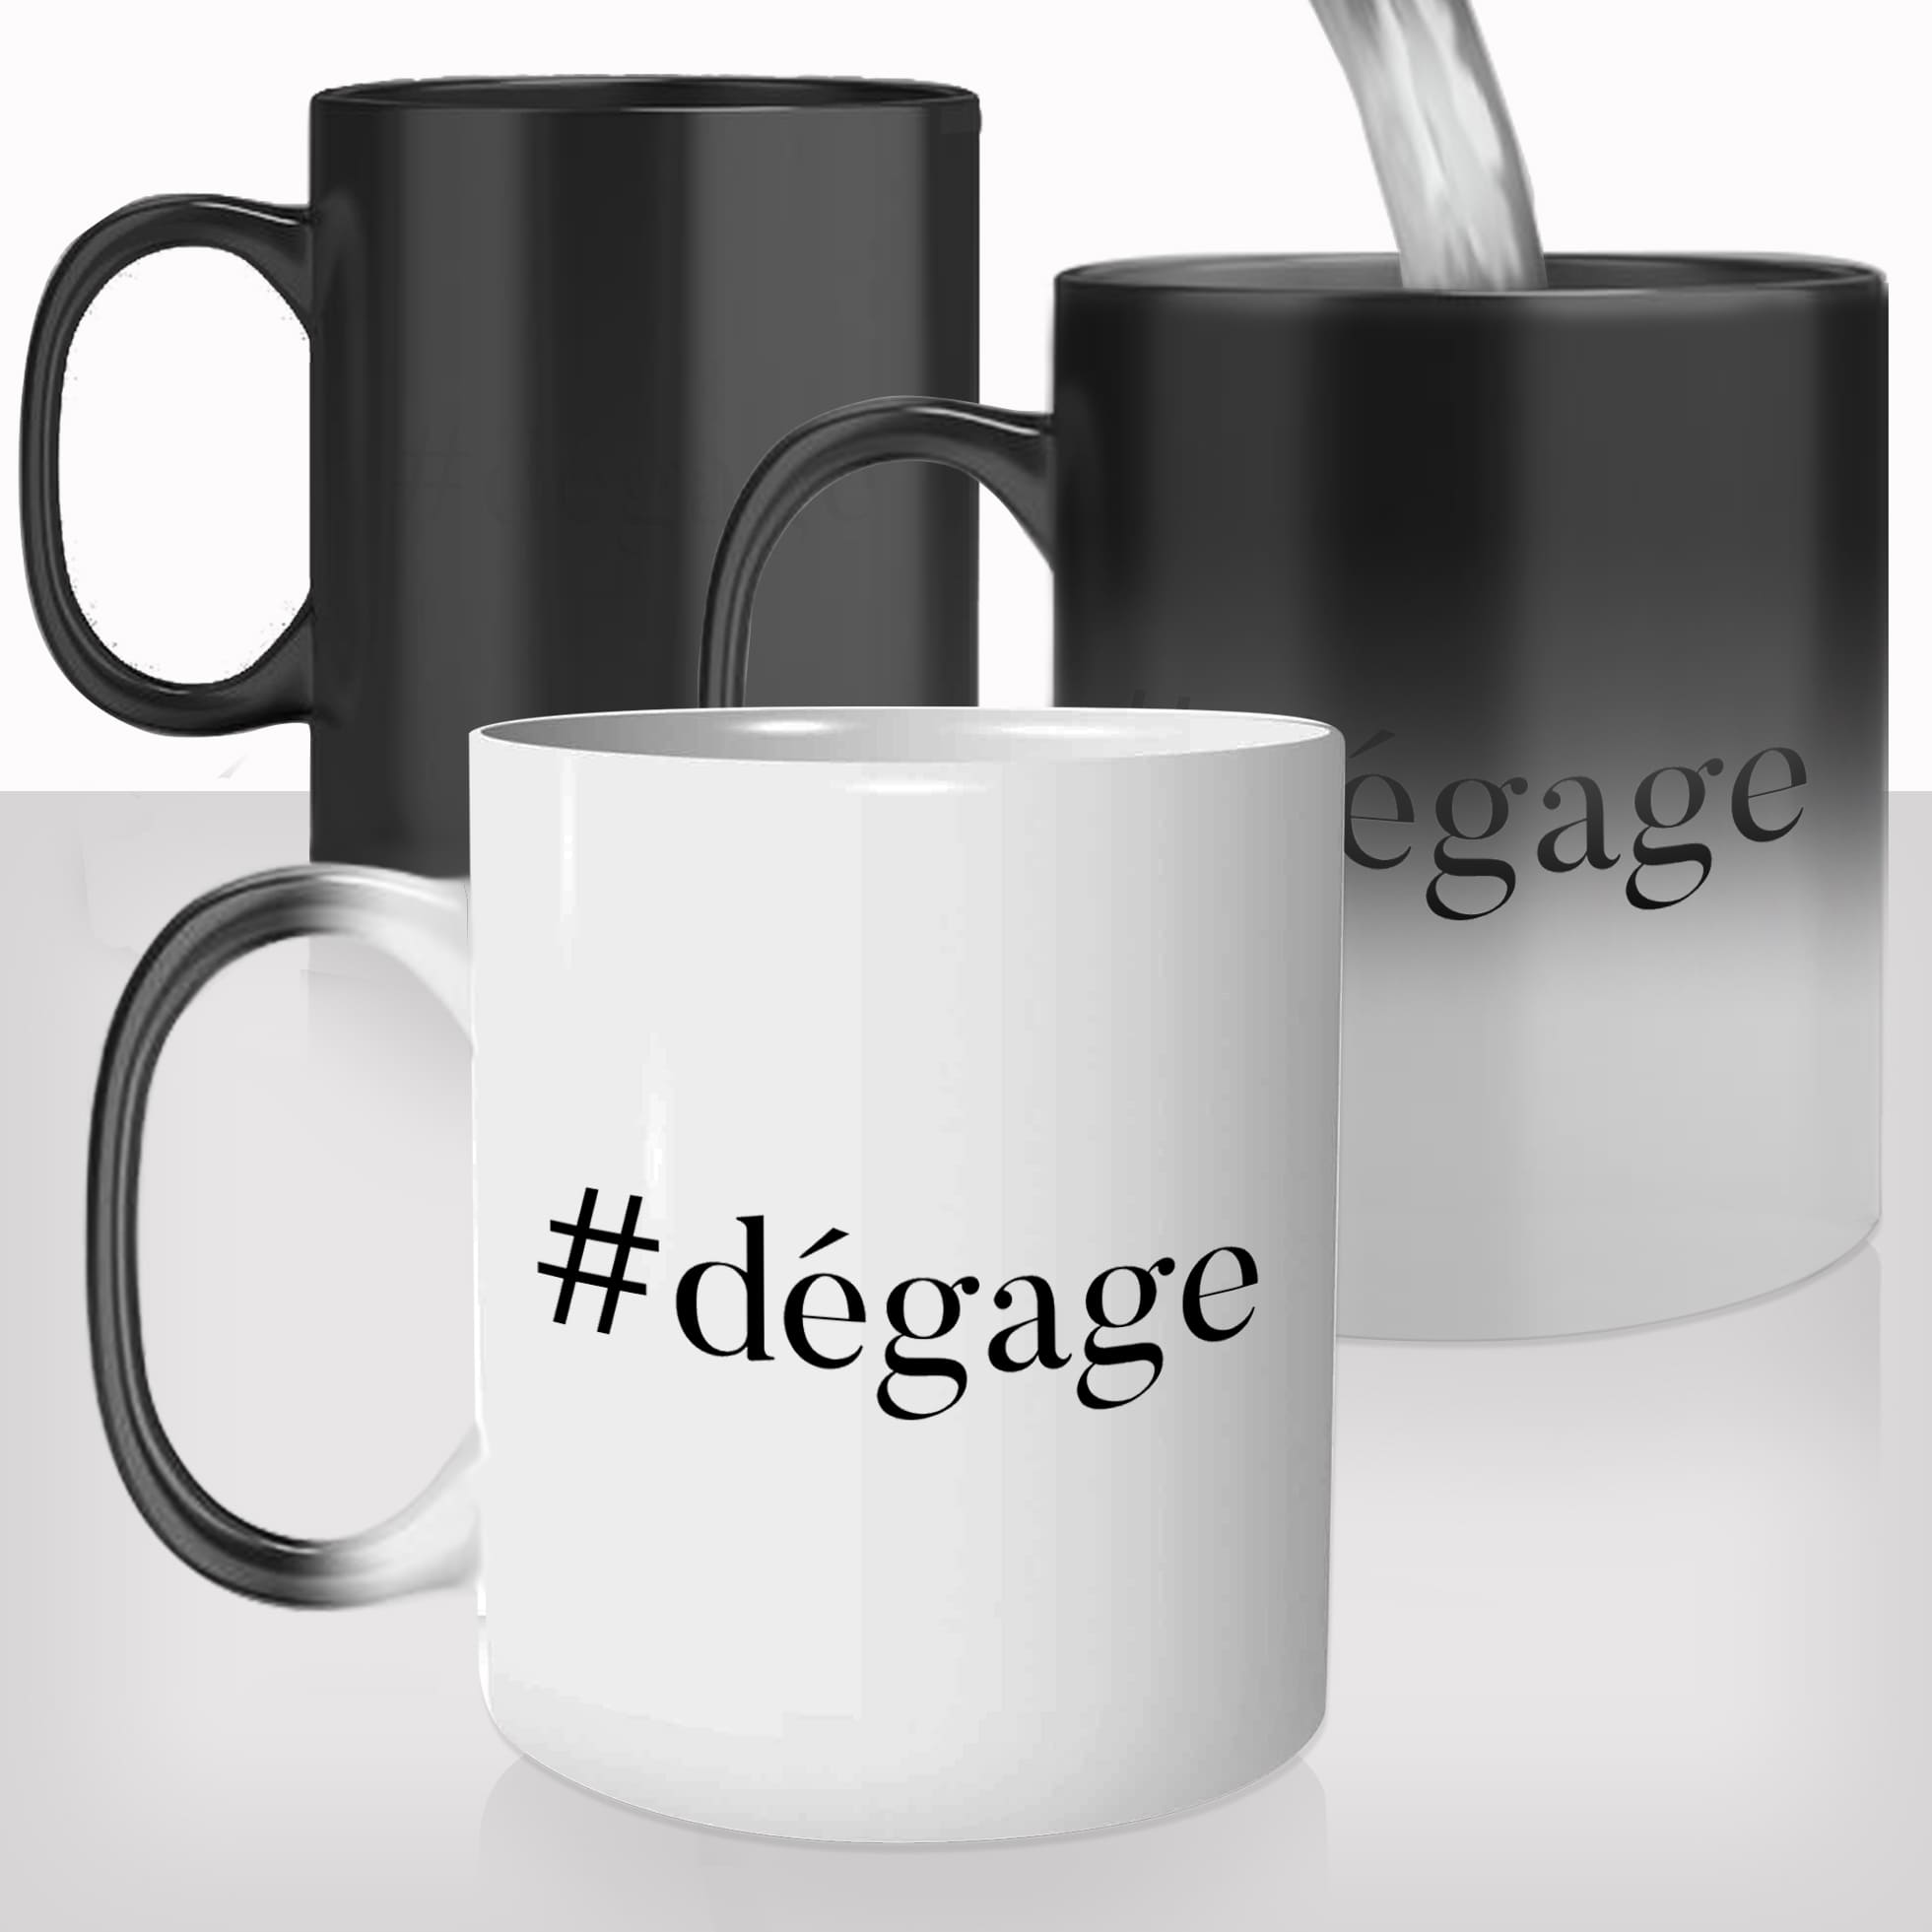 mug-magique-tasse-magic-thermo-reactif-hastag-degage-laisse-moi-tranquille-reveil-café-humour-drole-offrir-cadeau-original-ta-gueule-fun-cool